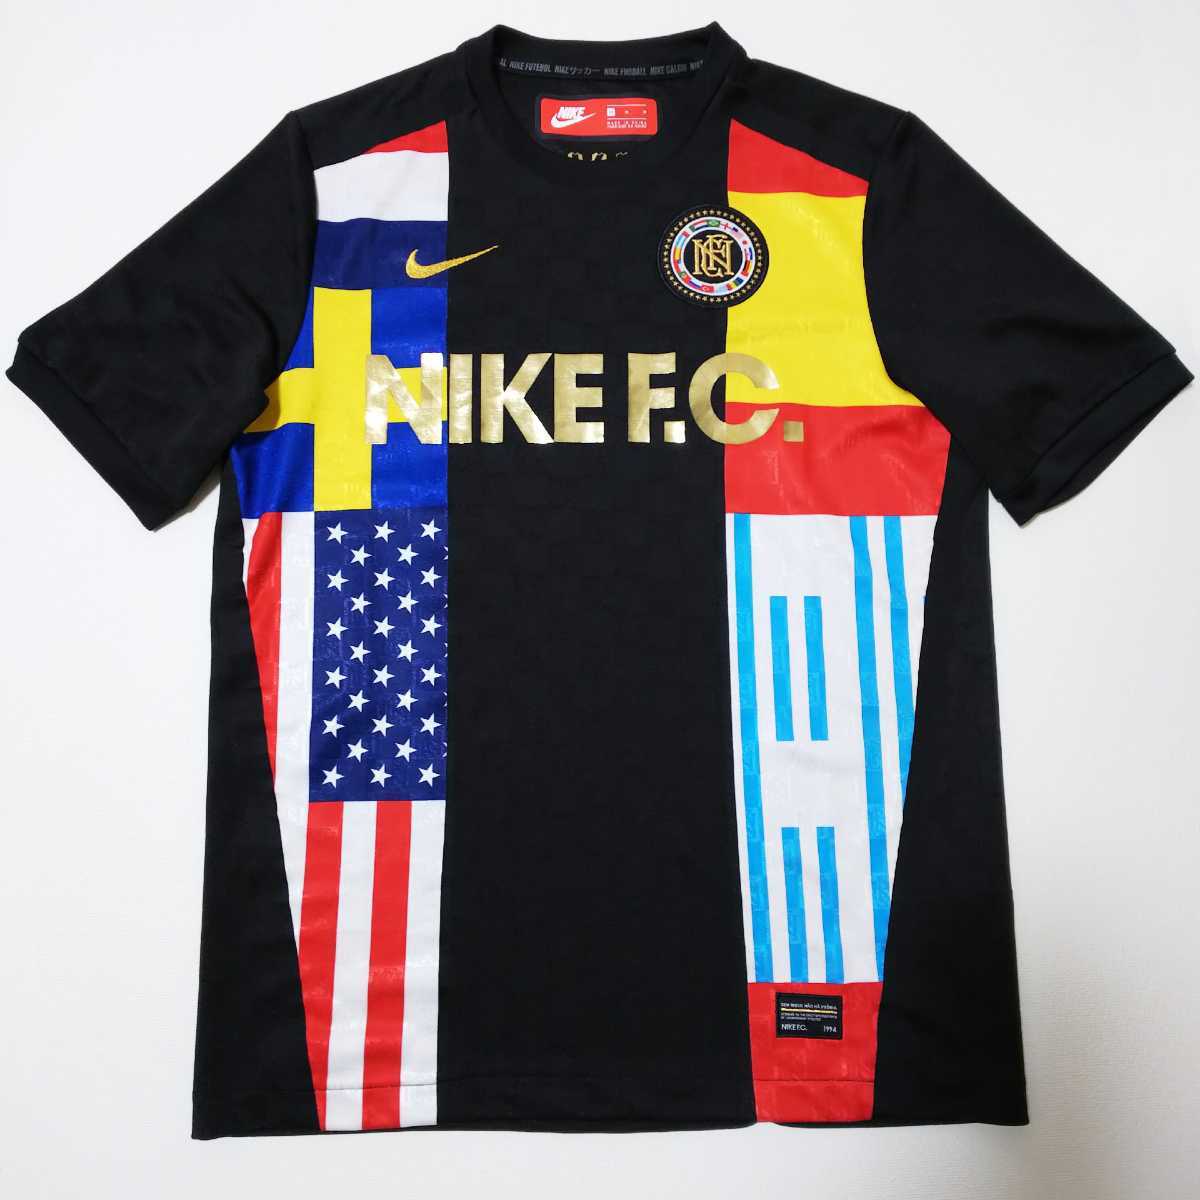 【サッカー】NIKE ナイキ 『NIKE F.C.』 半袖Tシャツ Mサイズ ブラック ワッペン 刺繍ロゴ_画像3